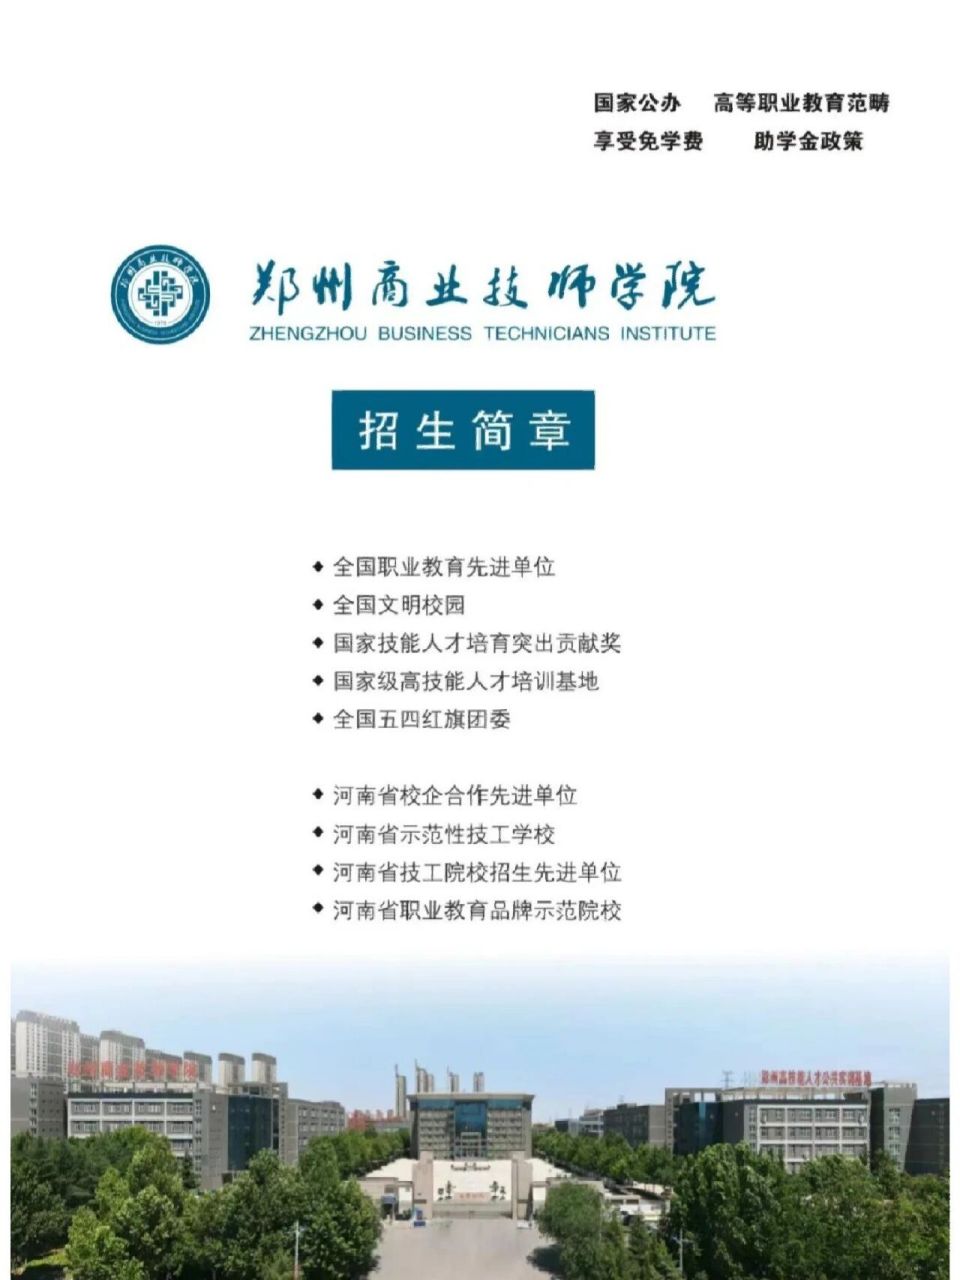 郑州市商业技术学院图片